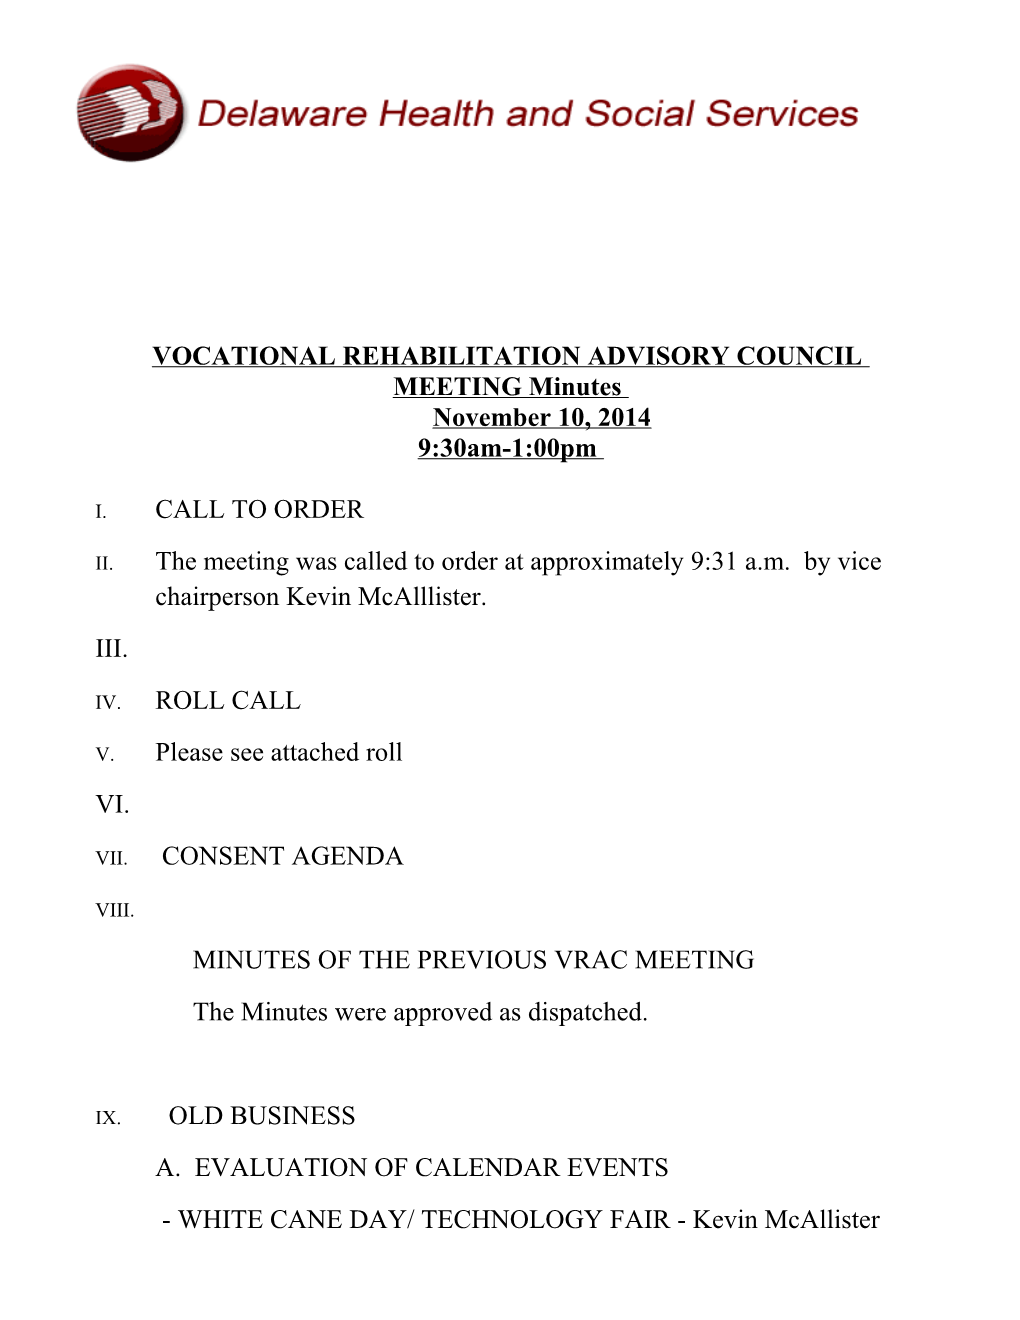 Vocational Rehabilitation Advisory Council